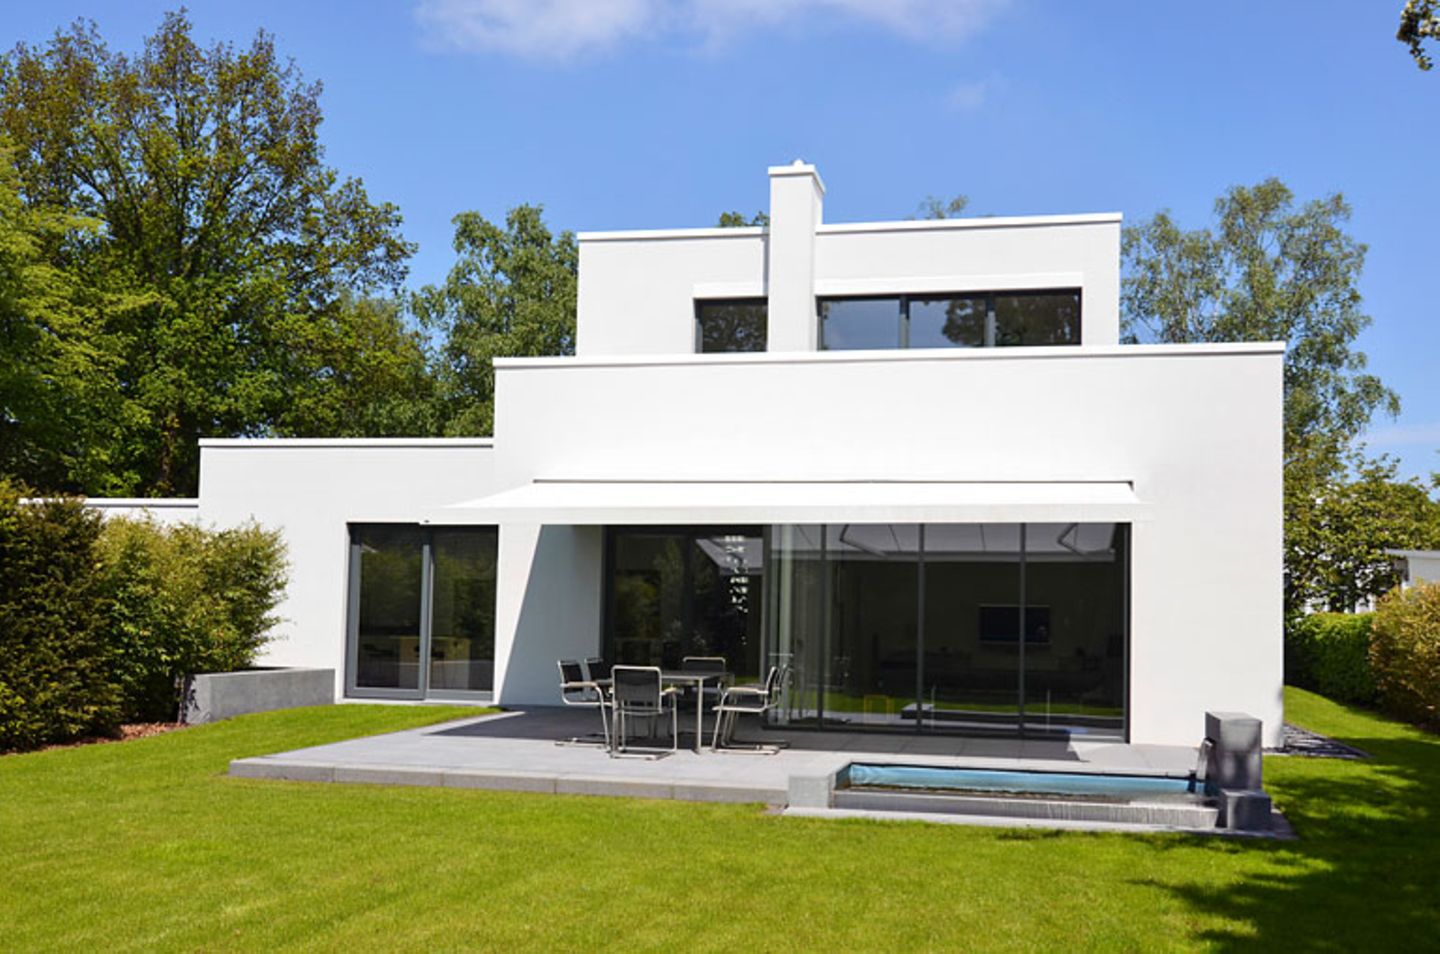 Das moderne Bremer Einfamilienhaus setzt sich aus kunstvoll verschachtelten Quadern zusammen.